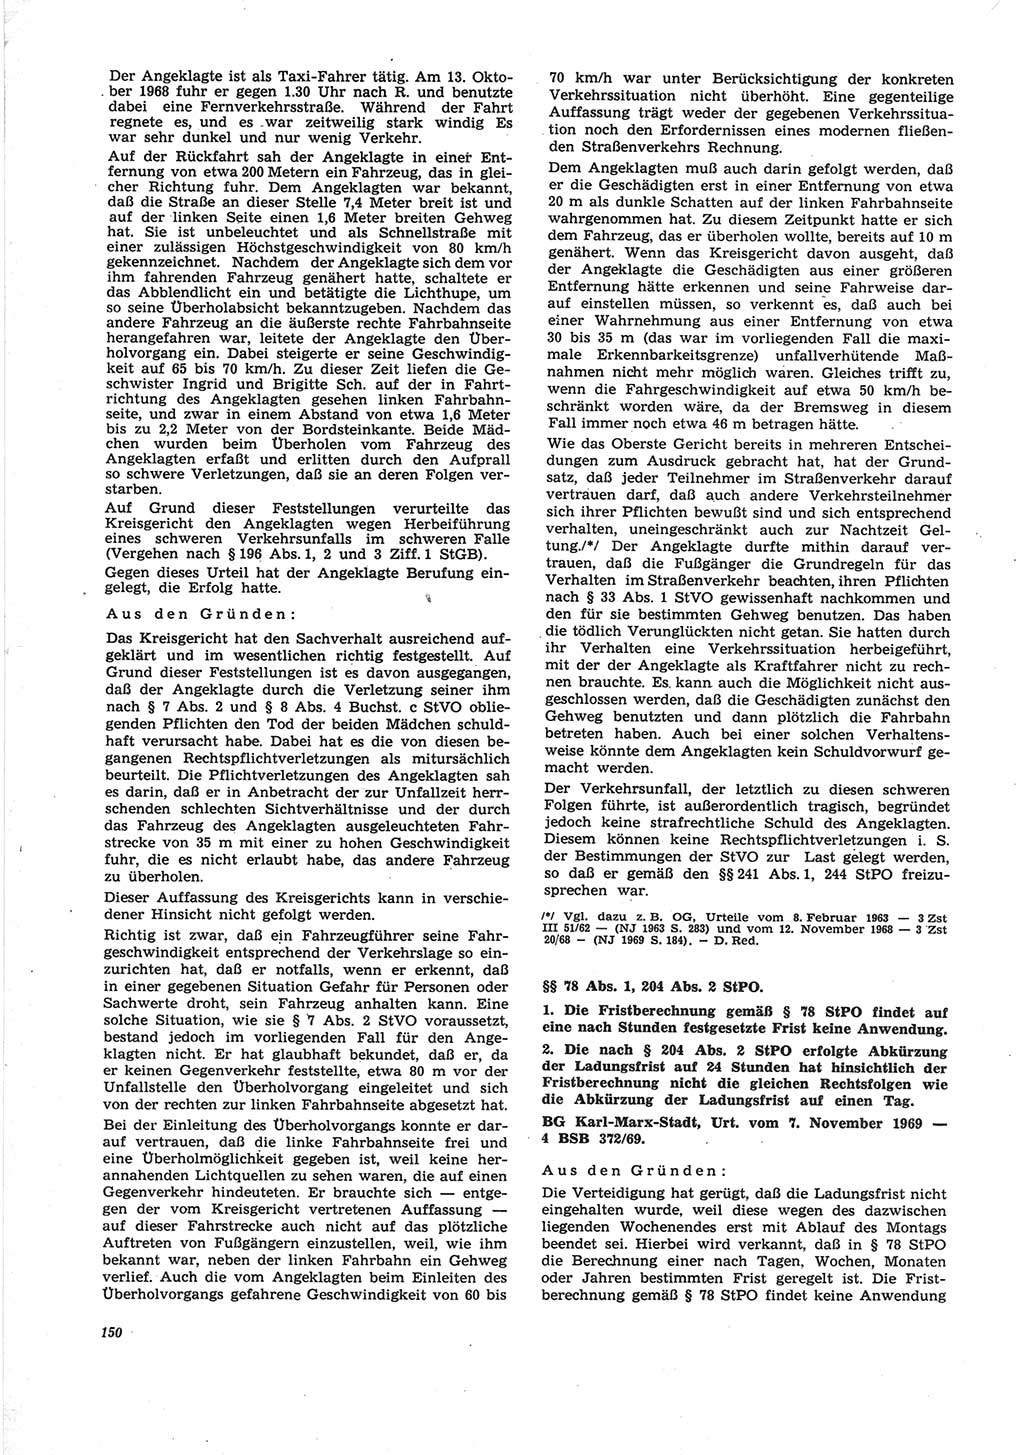 Neue Justiz (NJ), Zeitschrift für Recht und Rechtswissenschaft [Deutsche Demokratische Republik (DDR)], 25. Jahrgang 1971, Seite 150 (NJ DDR 1971, S. 150)